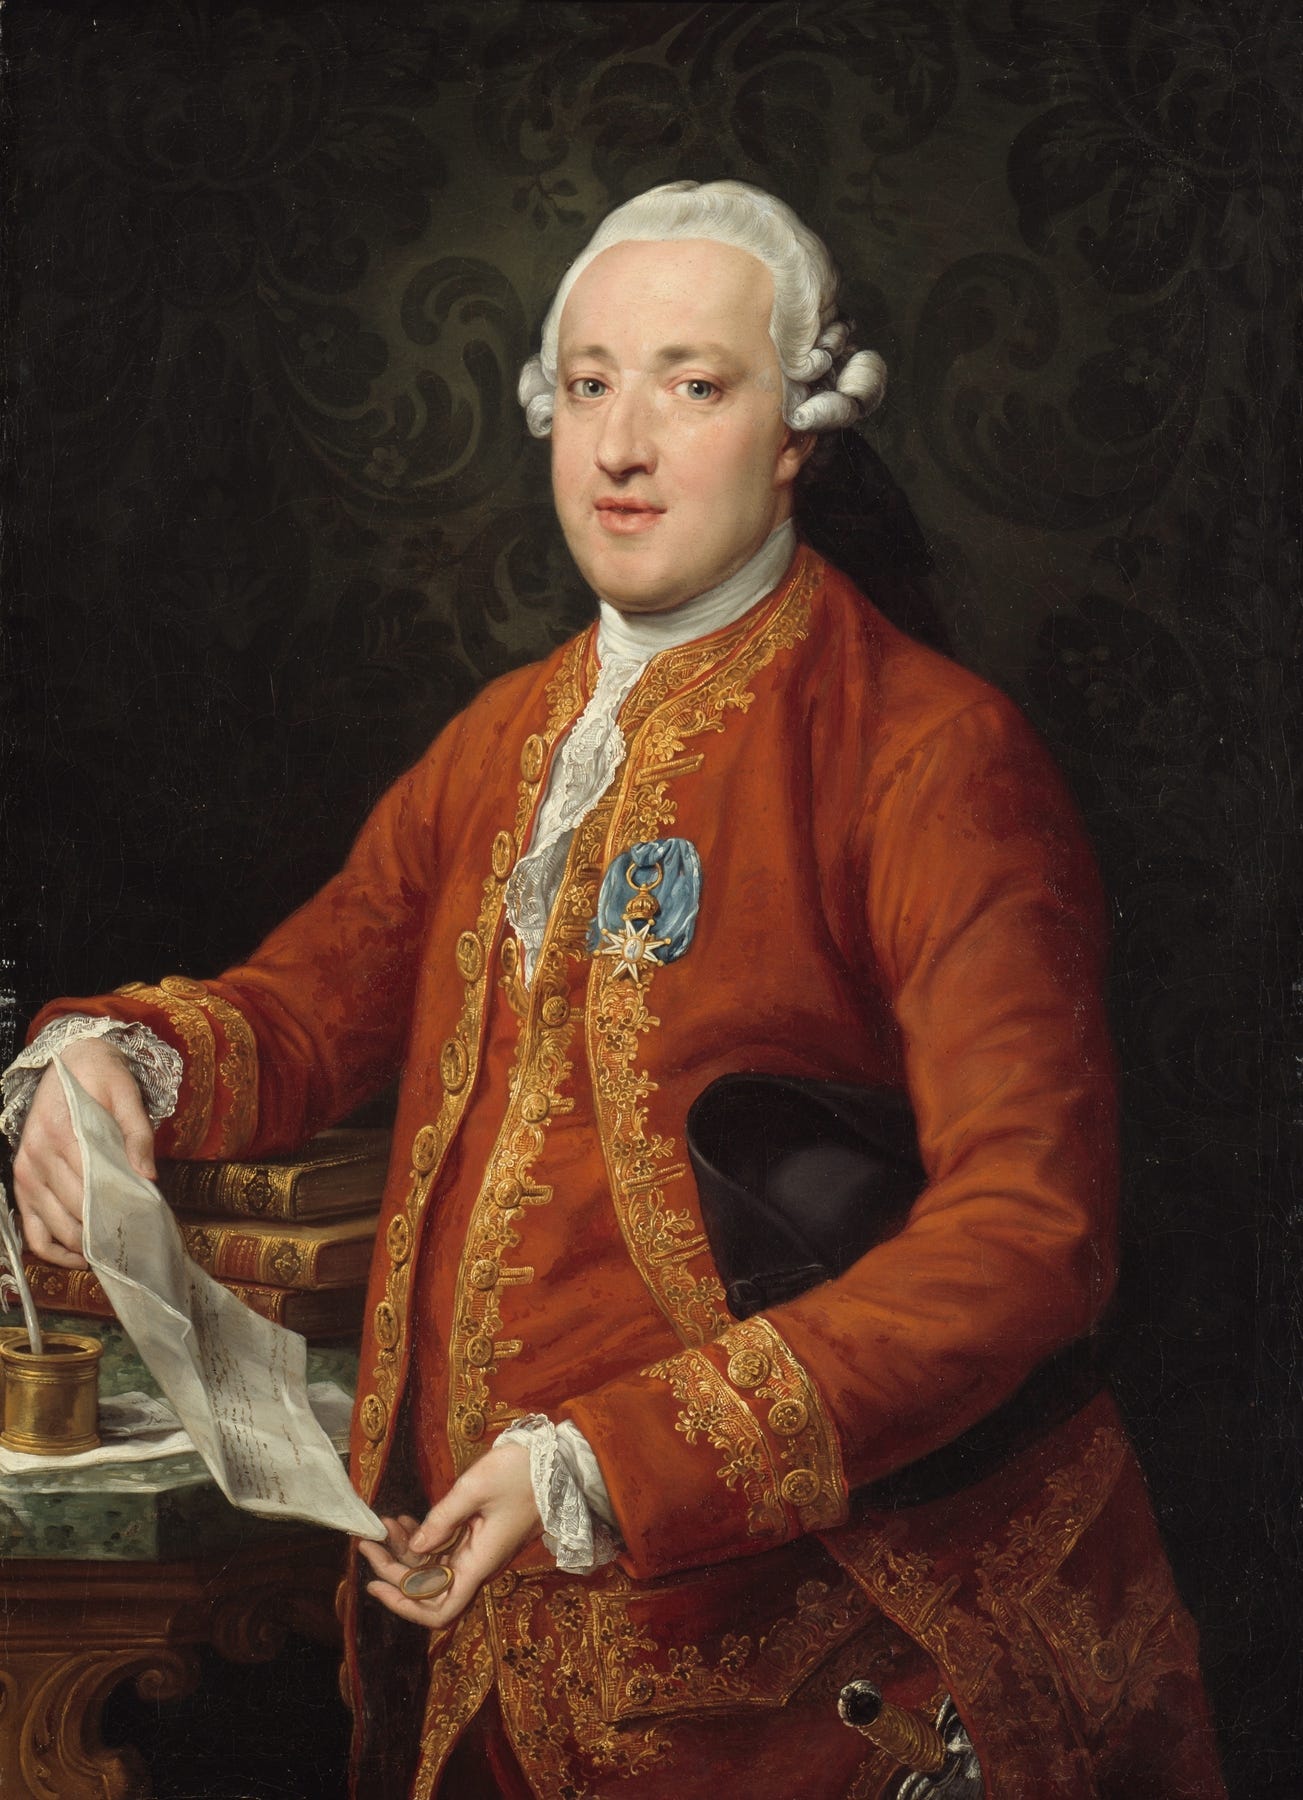 Don José Moñino y Redondo, Conde de Floridablanca (c. 1776) by Pompeo Batoni